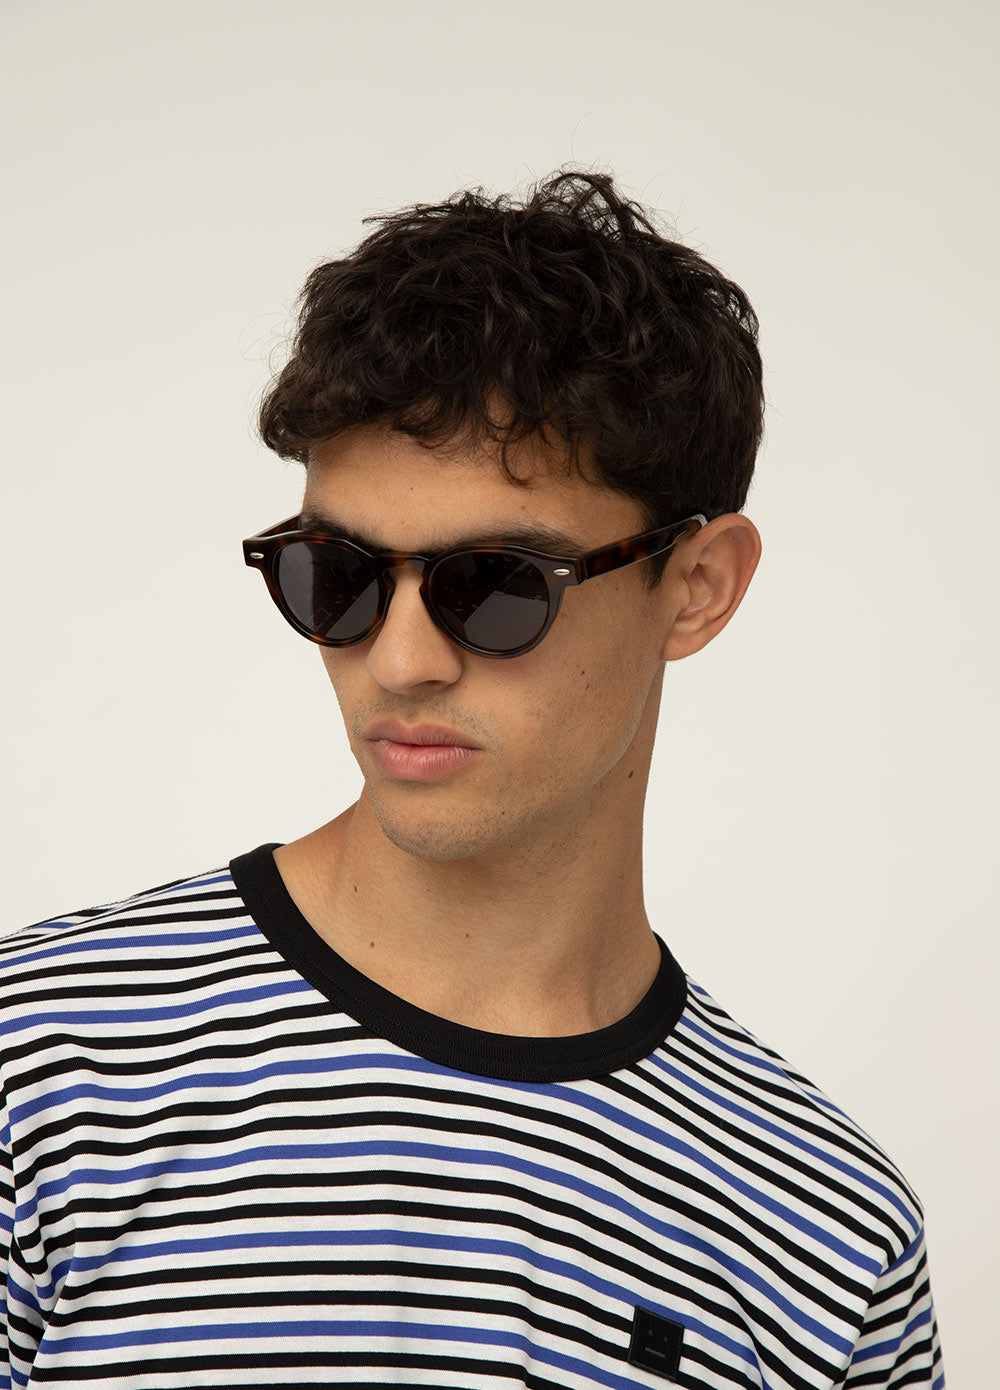 Franc Sunglasses